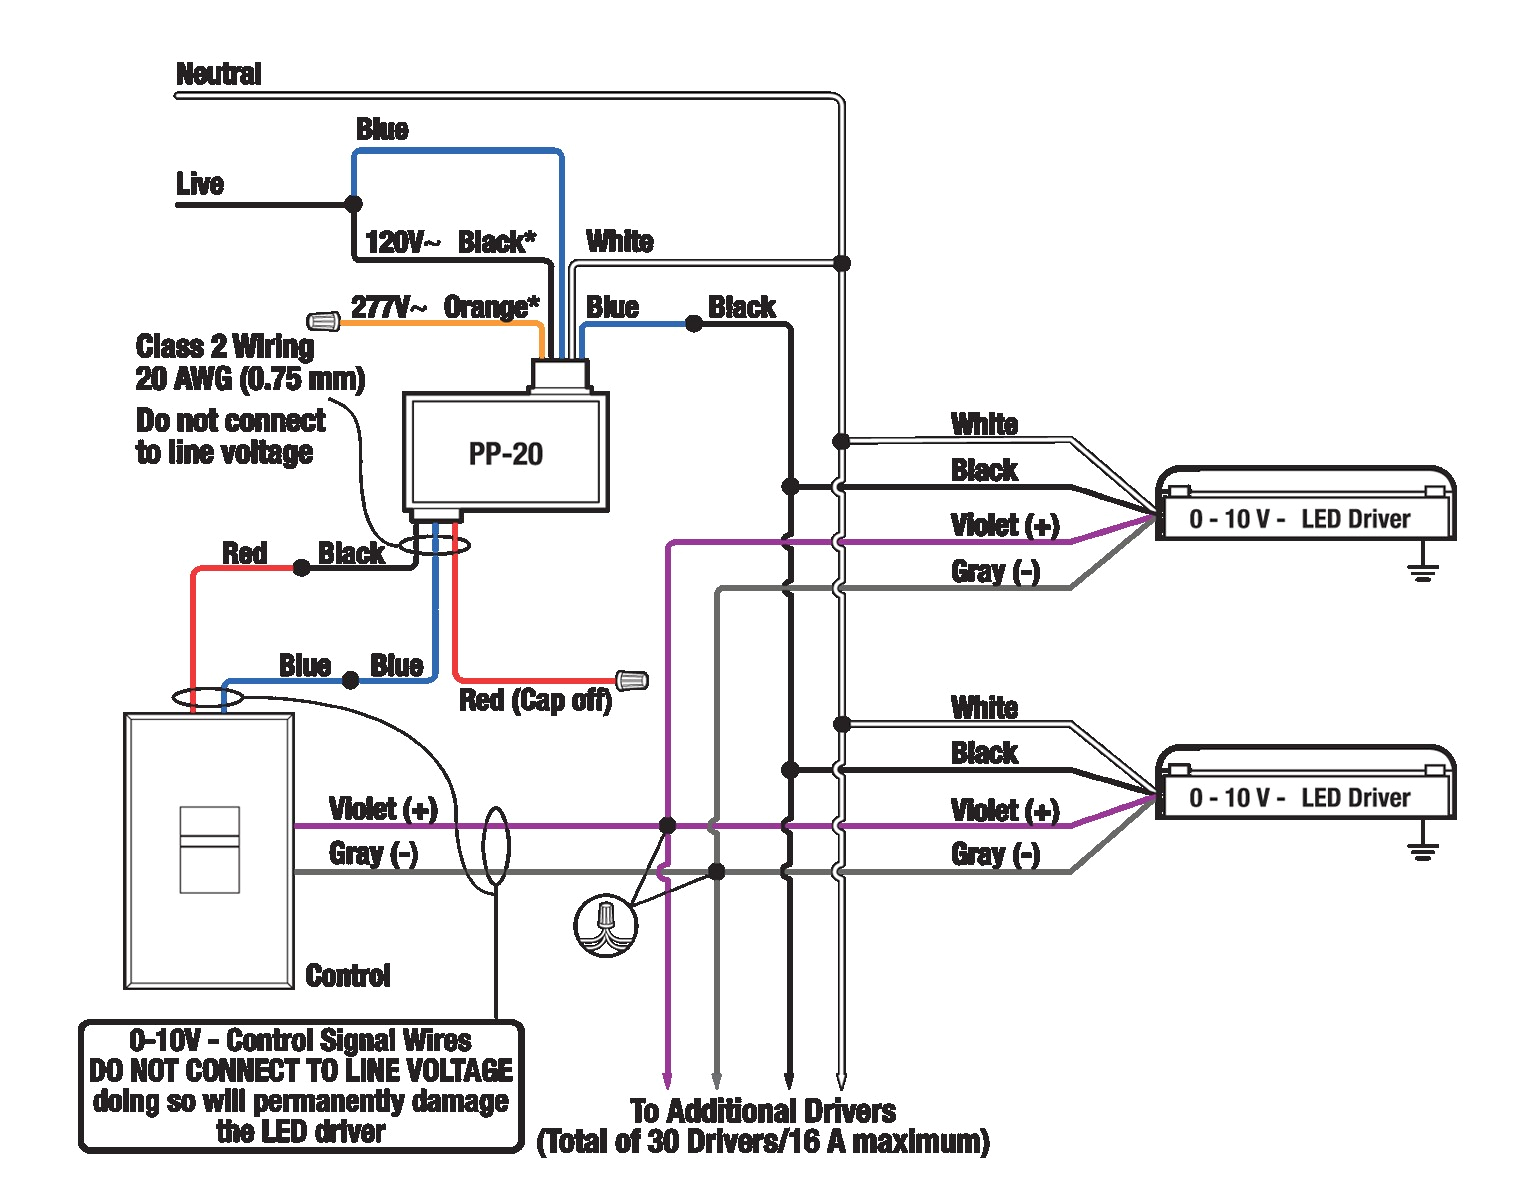 bi level dimming wiring diagram wiring diagram img step dimming wiring diagram lutron nf 10 wiring